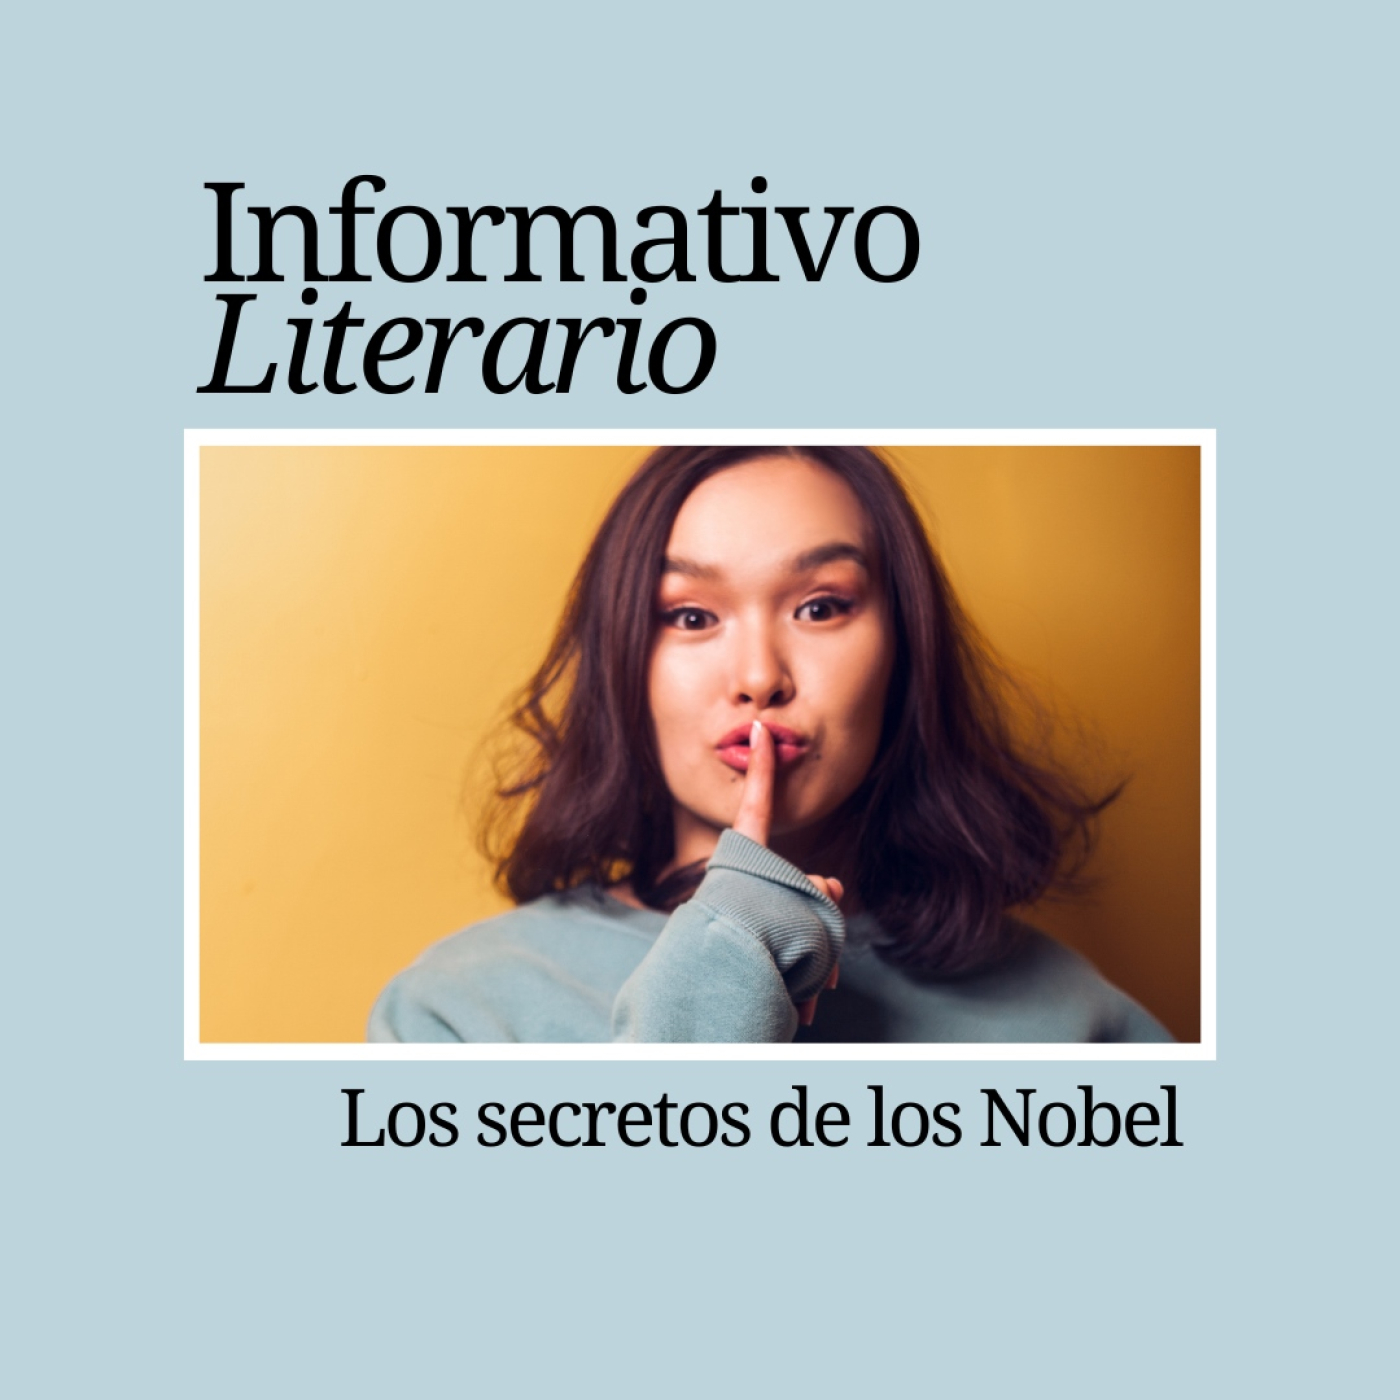 Informativo Literario. Los secretos de los Nobel